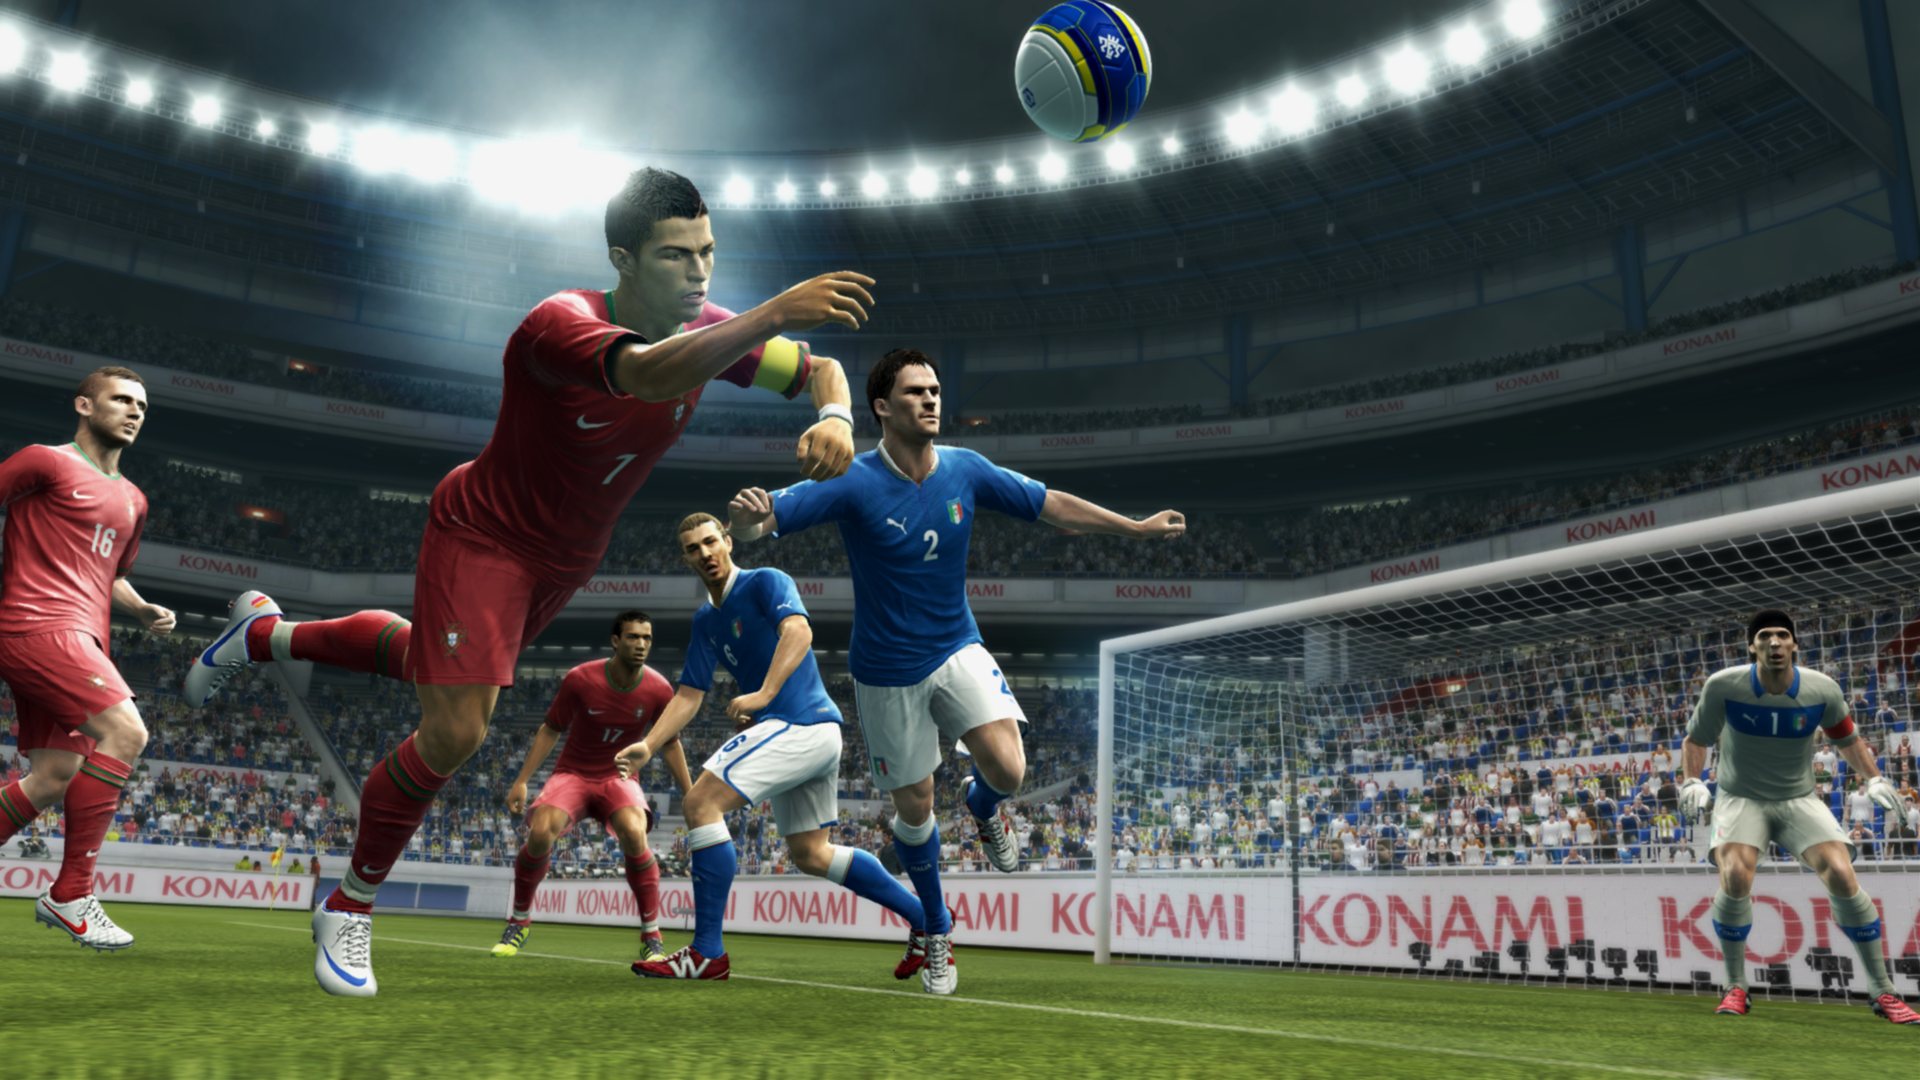 ワールドサッカー ウイニングイレブン 2013 Ps3 4gamer Net